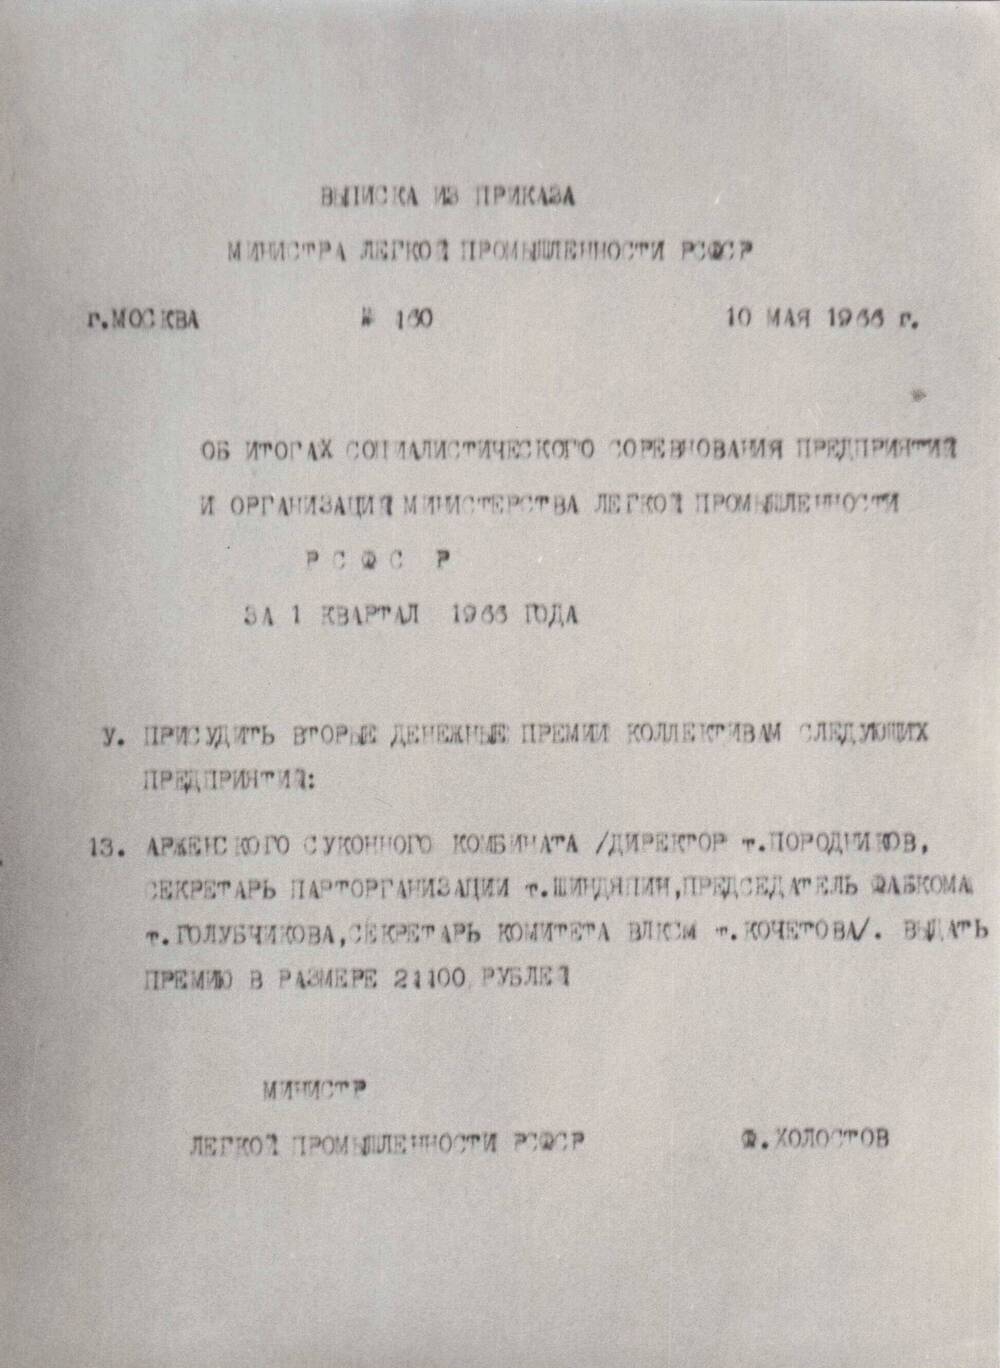 Фотография выписки из приказа министерства легкой промышленности РСФСР